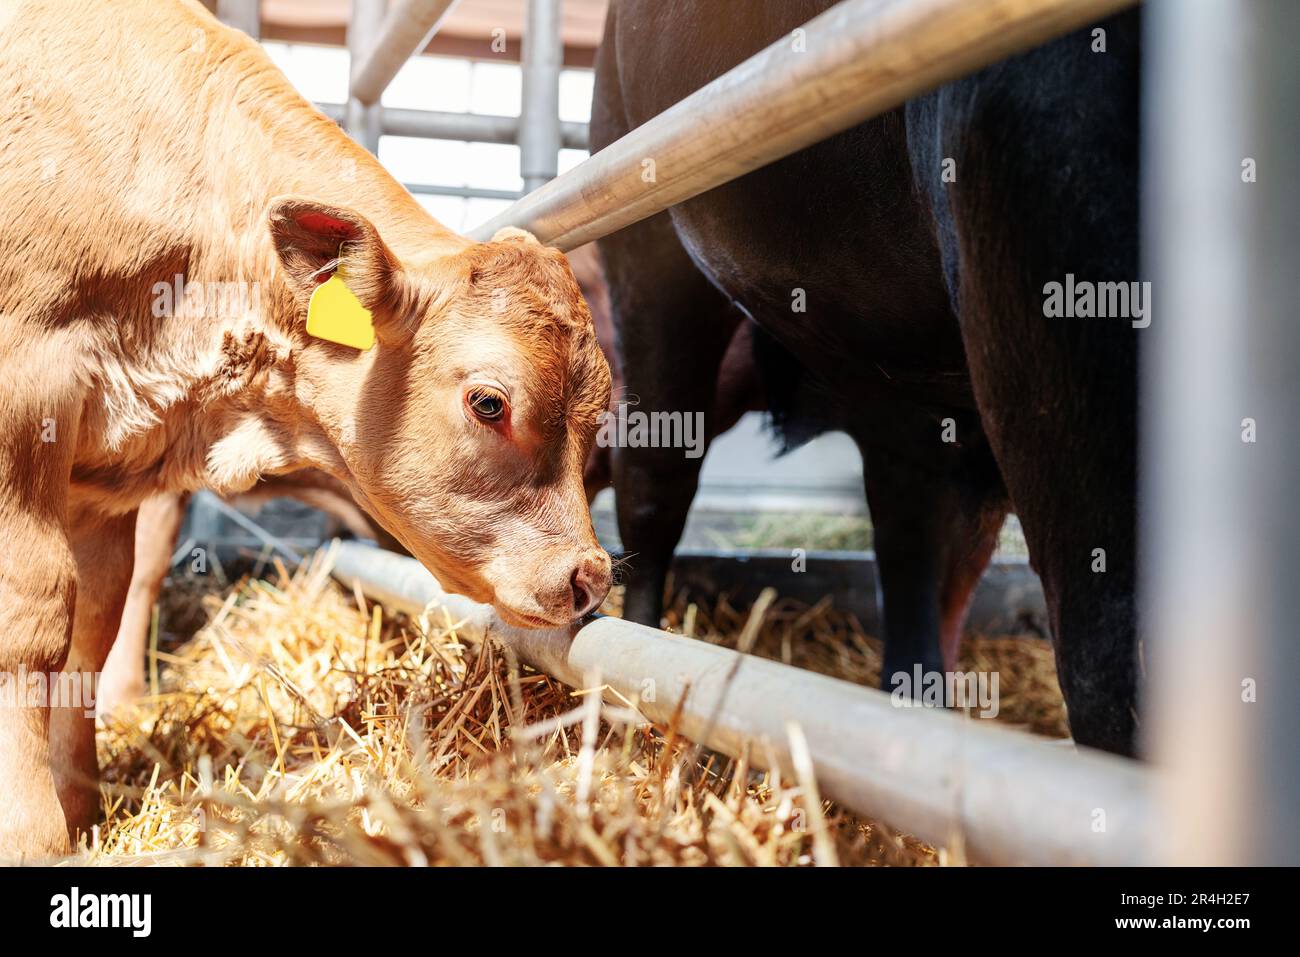 Portrait red calf in livestock farm. Stock Photo